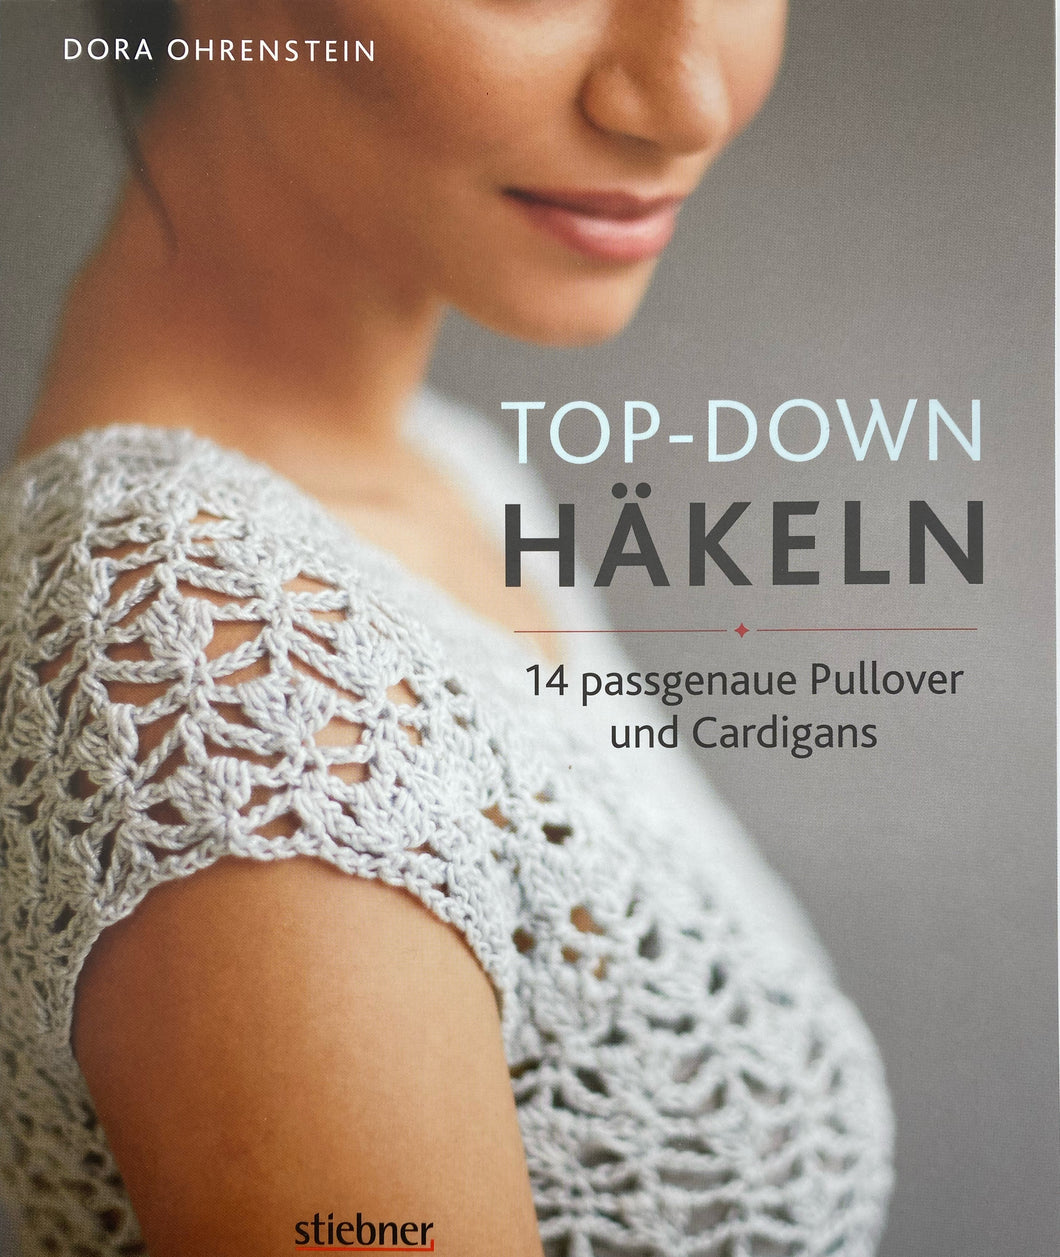 Top-Down: Häkeln - Dora Ohrenstein 14 Häkelideen für Pullover und Cardigans. Perfekte Passform durch Anprobieren während der Fertigung. Häkeln lernen mit einfachen Anleitungen und tollen Häkelmuster